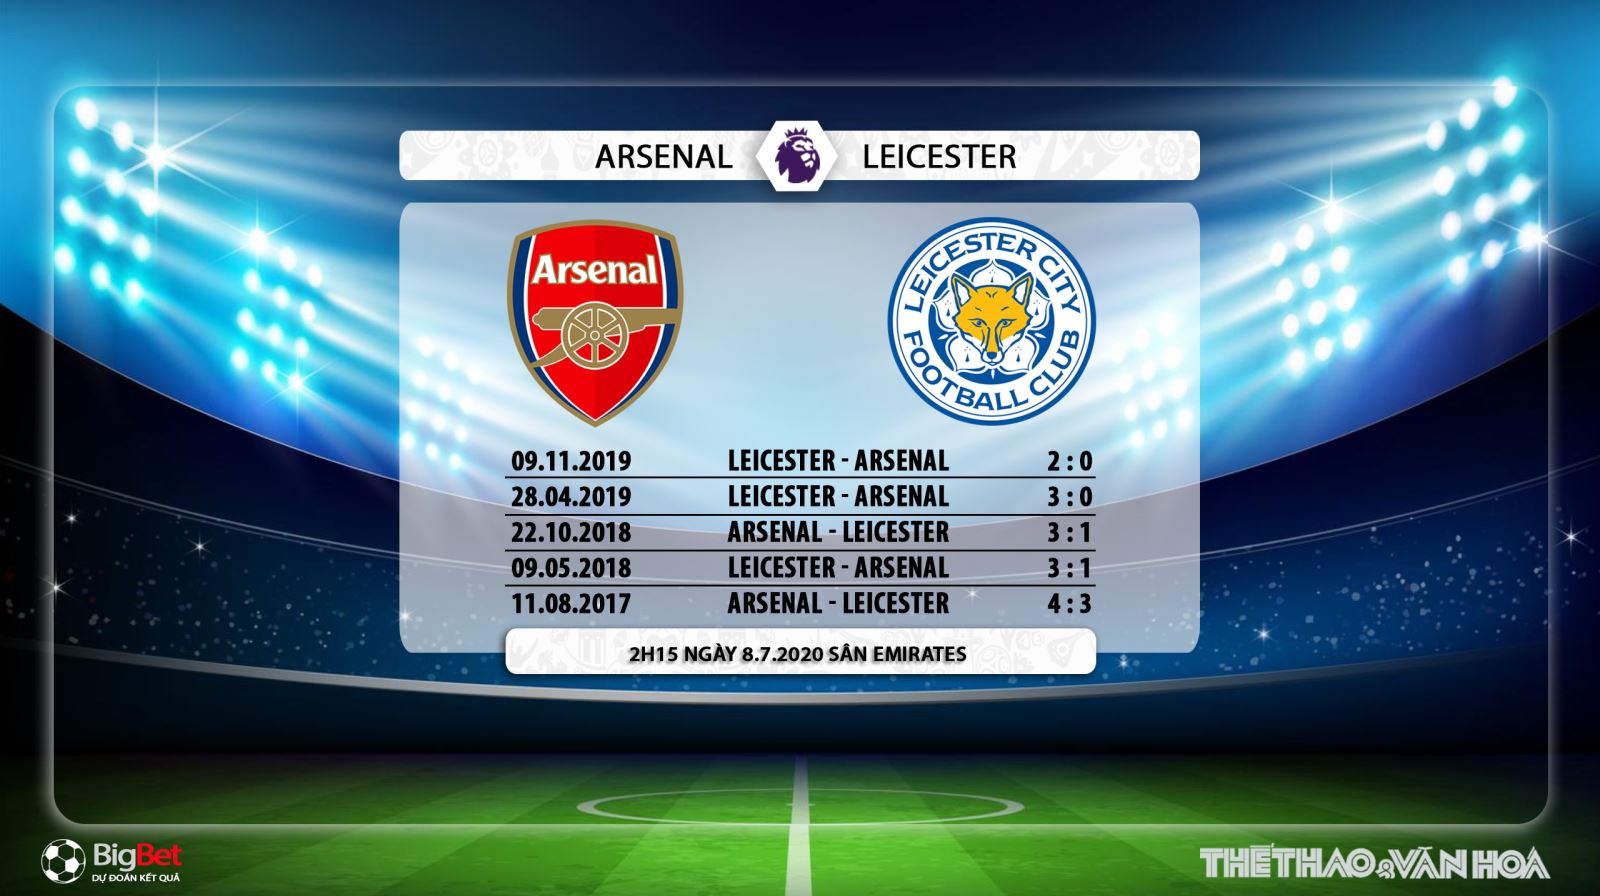 Arsenal vs Leicester, Arsenal, leicester, trực tiếp bóng đá, bóng đá, nhận định bóng đá, kèo bóng đá, lịch thi đấu